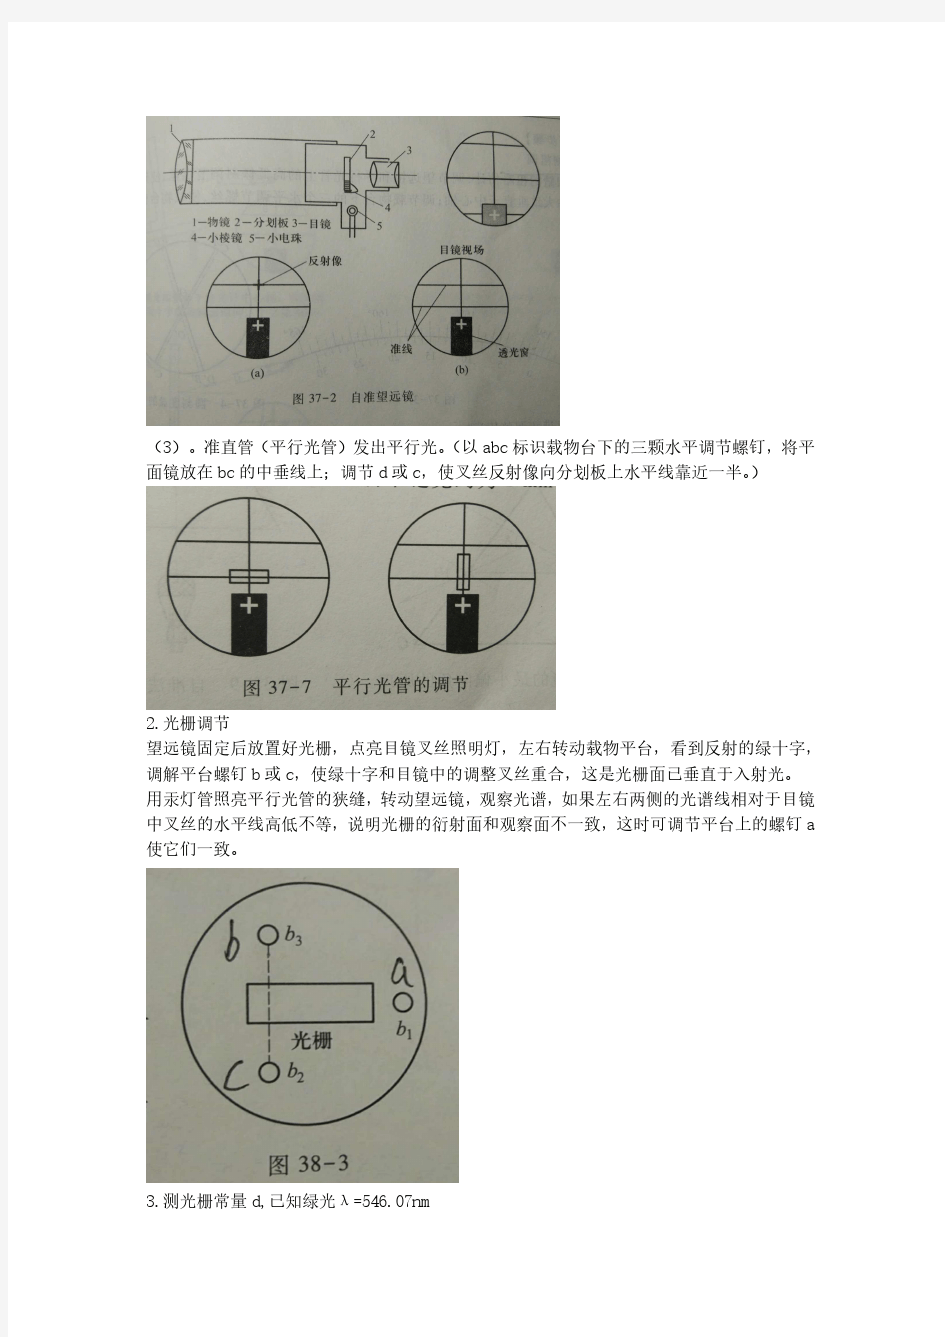 南昌大学物理实验报告-分光计调整及光栅常数测量